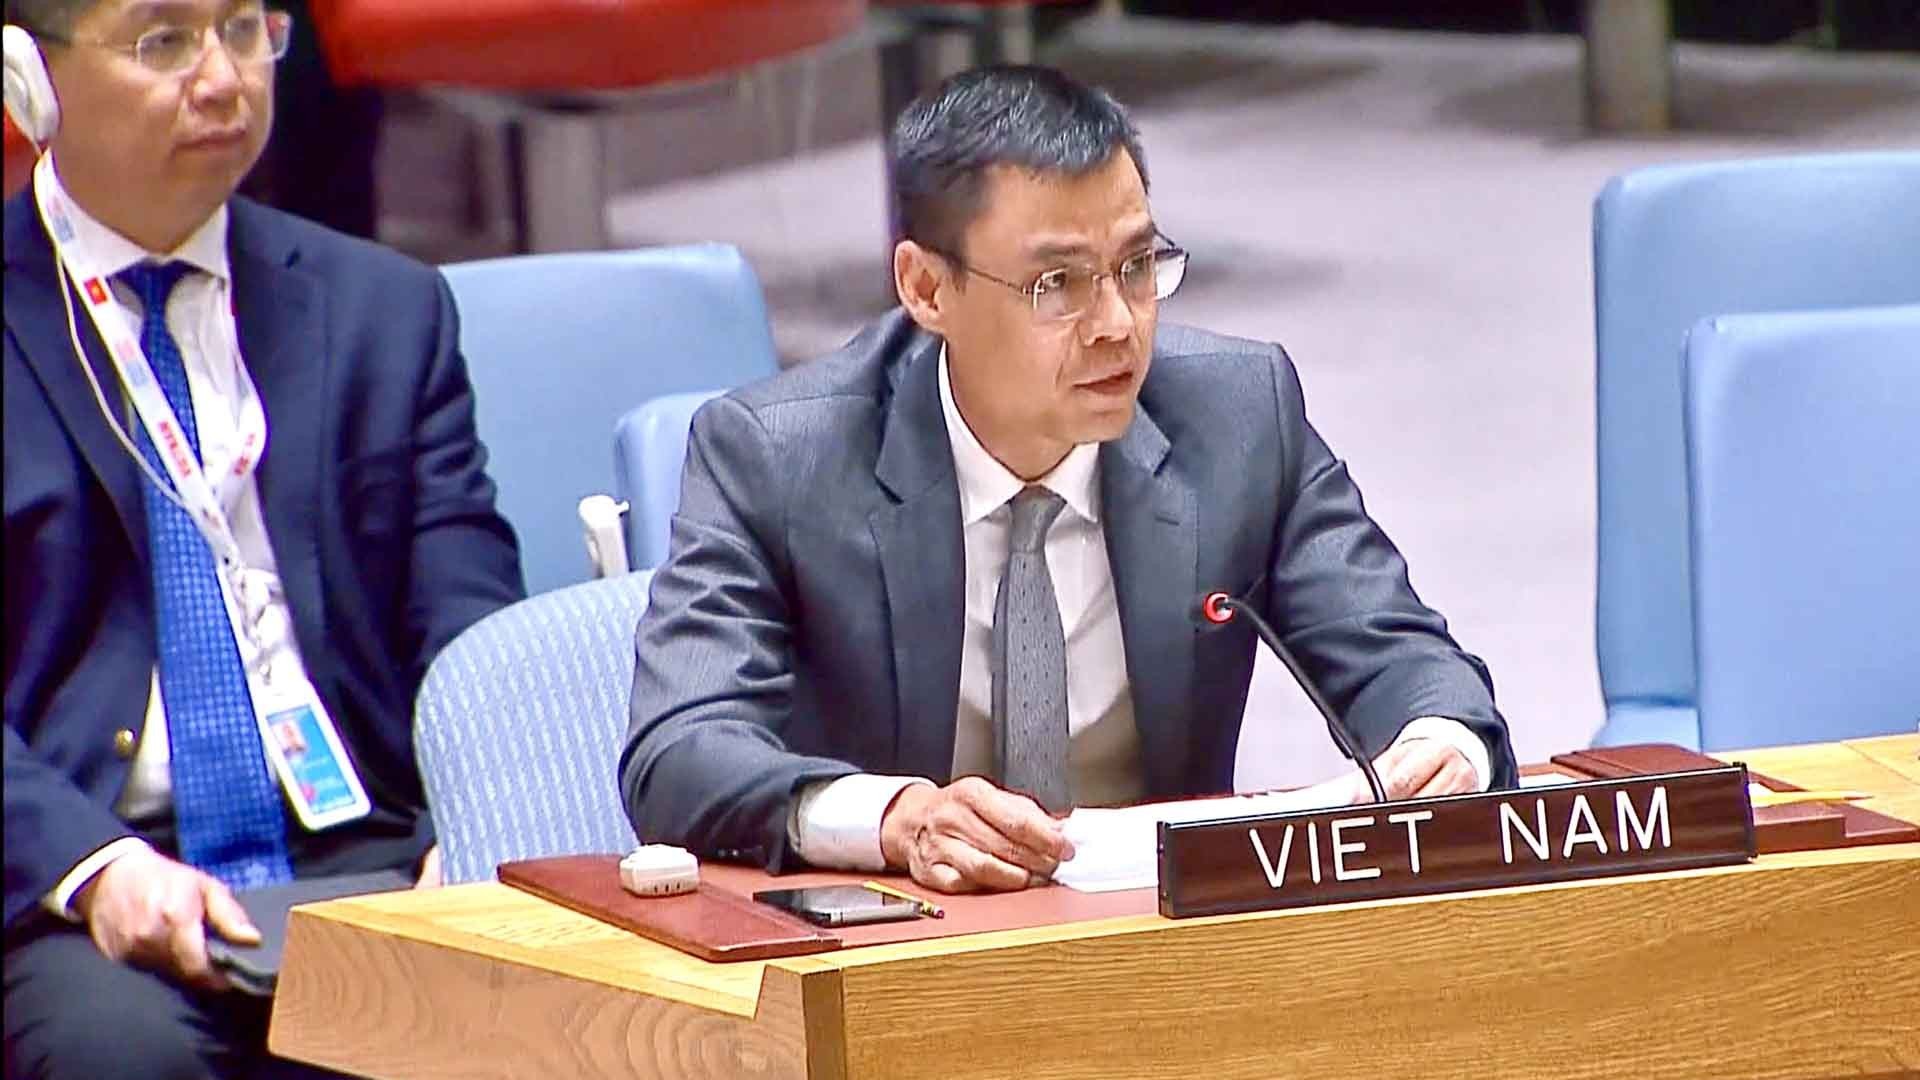 Việt Nam nhấn mạnh tất cả các quốc gia phải có trách nhiệm tuân thủ Hiến chương LHQ và luật pháp quốc tế